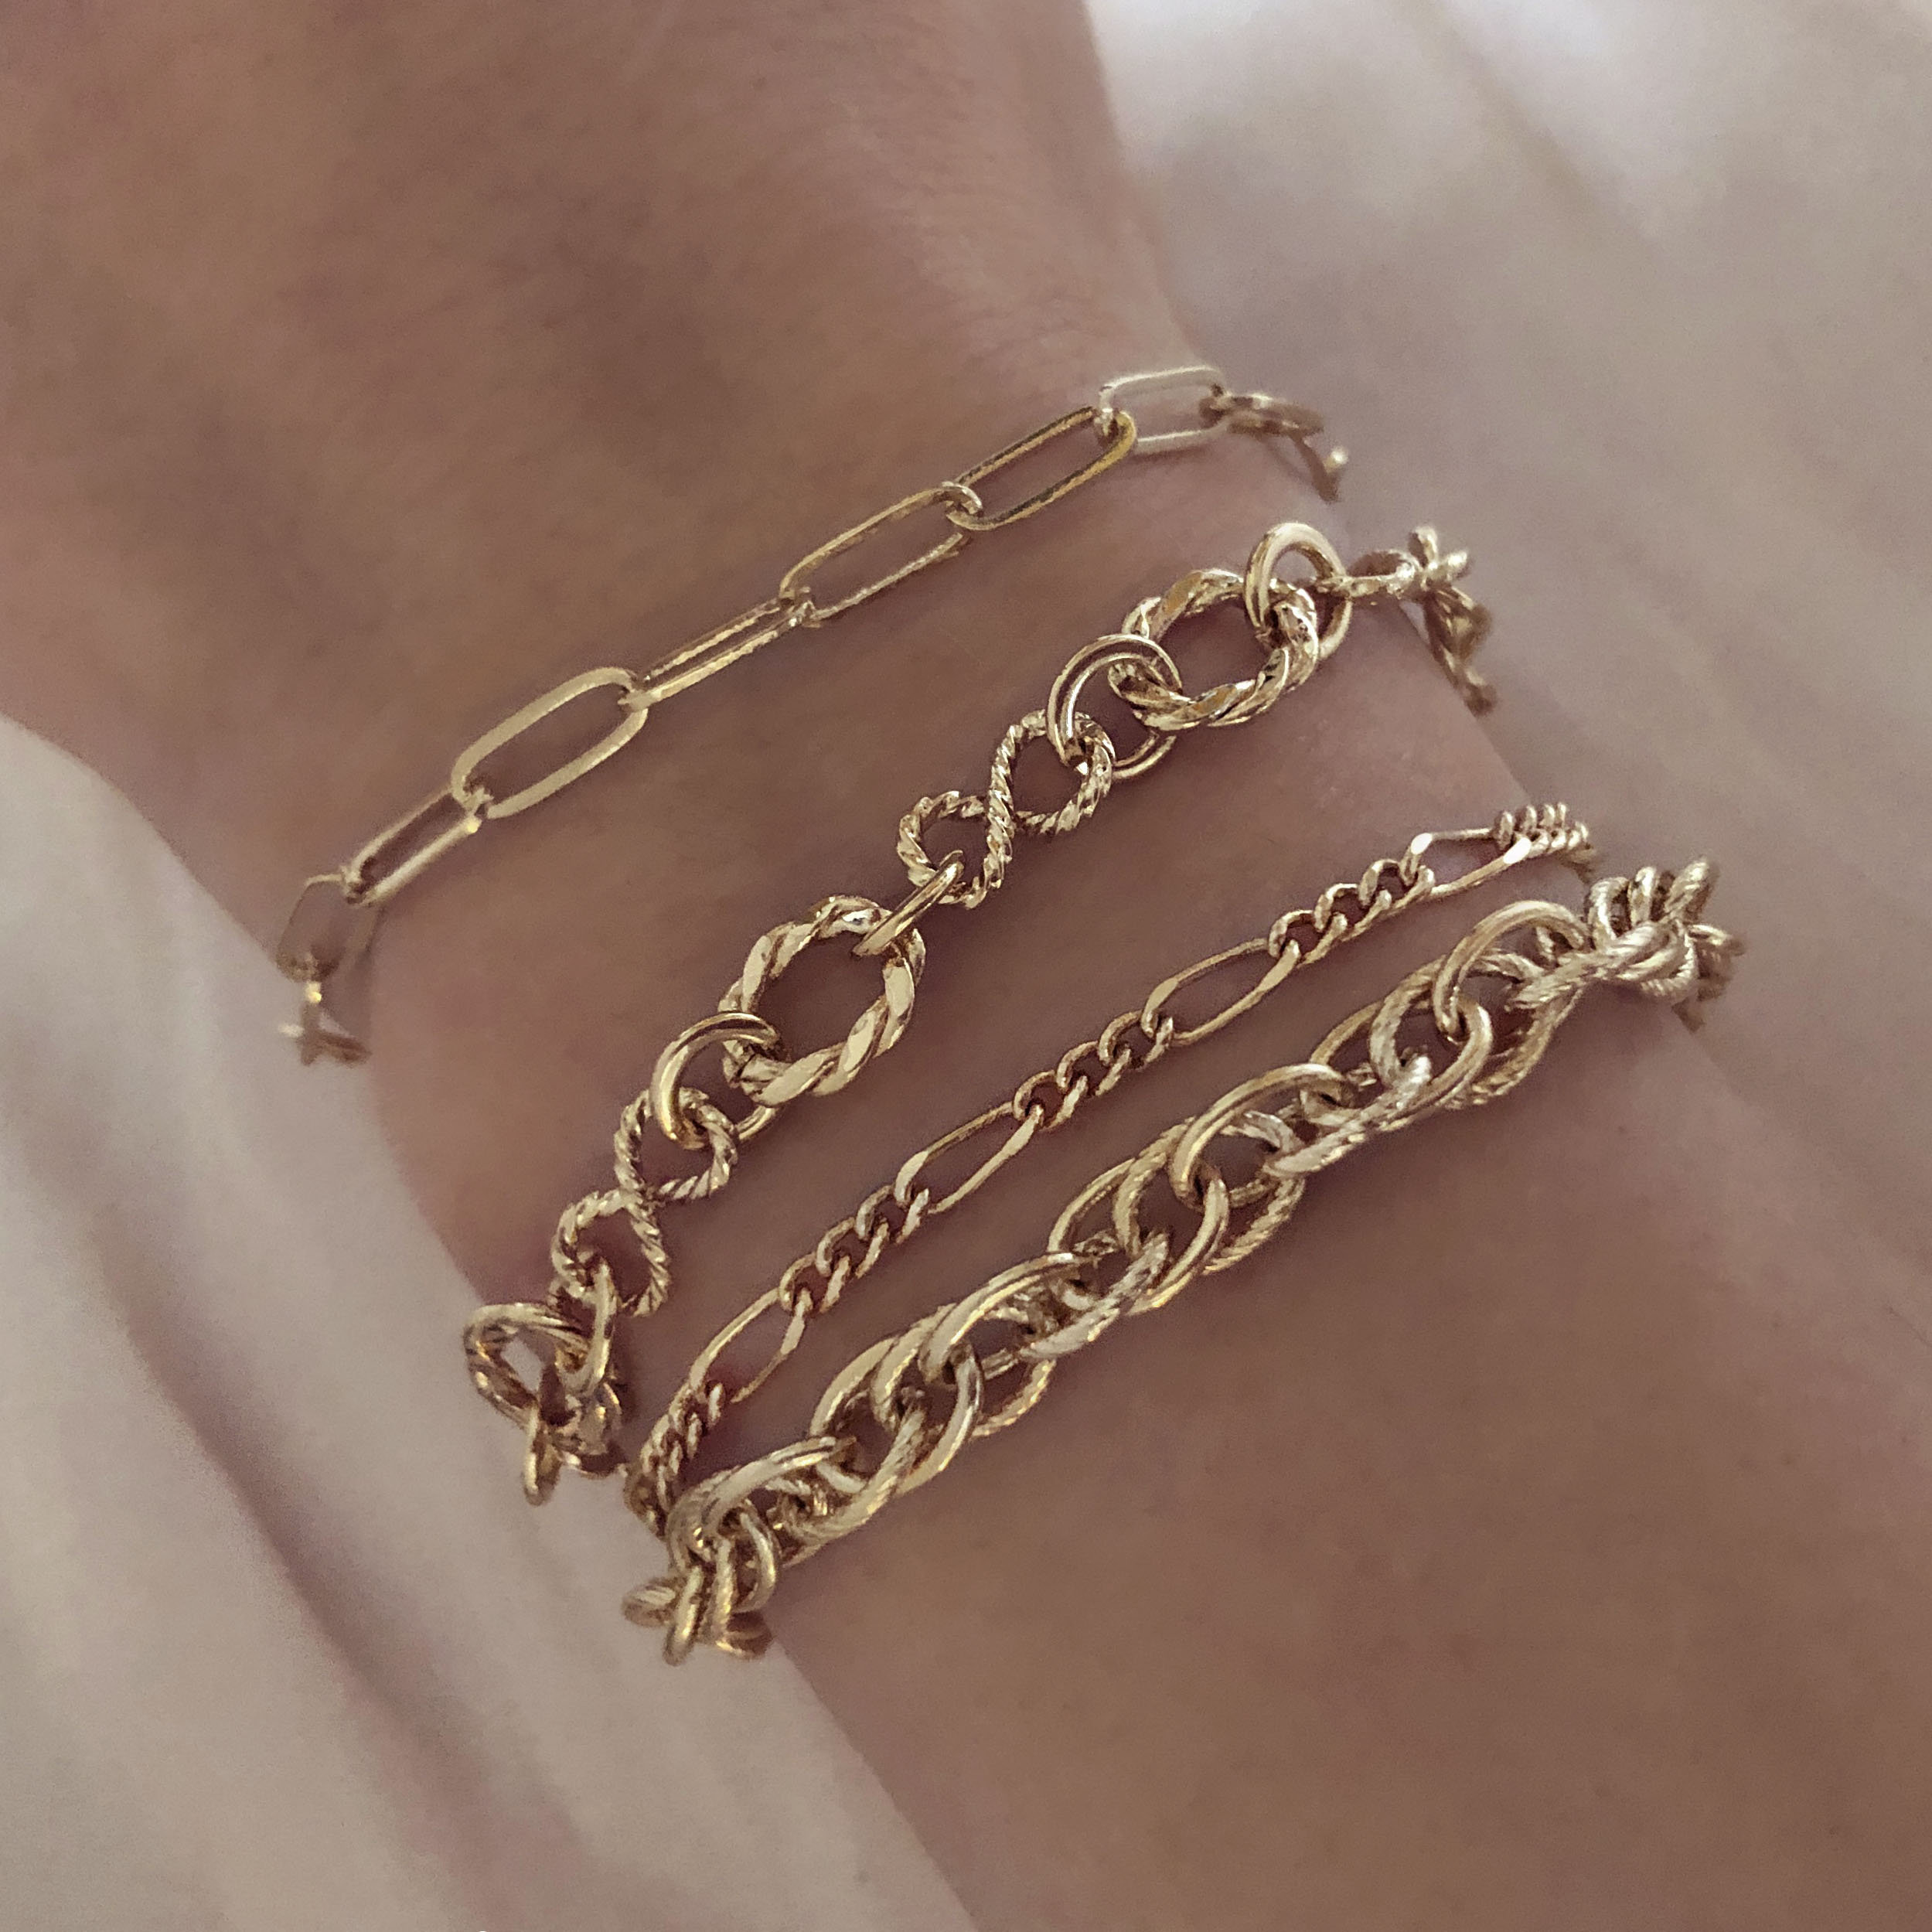 Heldig Boho Gold Chain Bracelets Set for Women Girls, Multiple